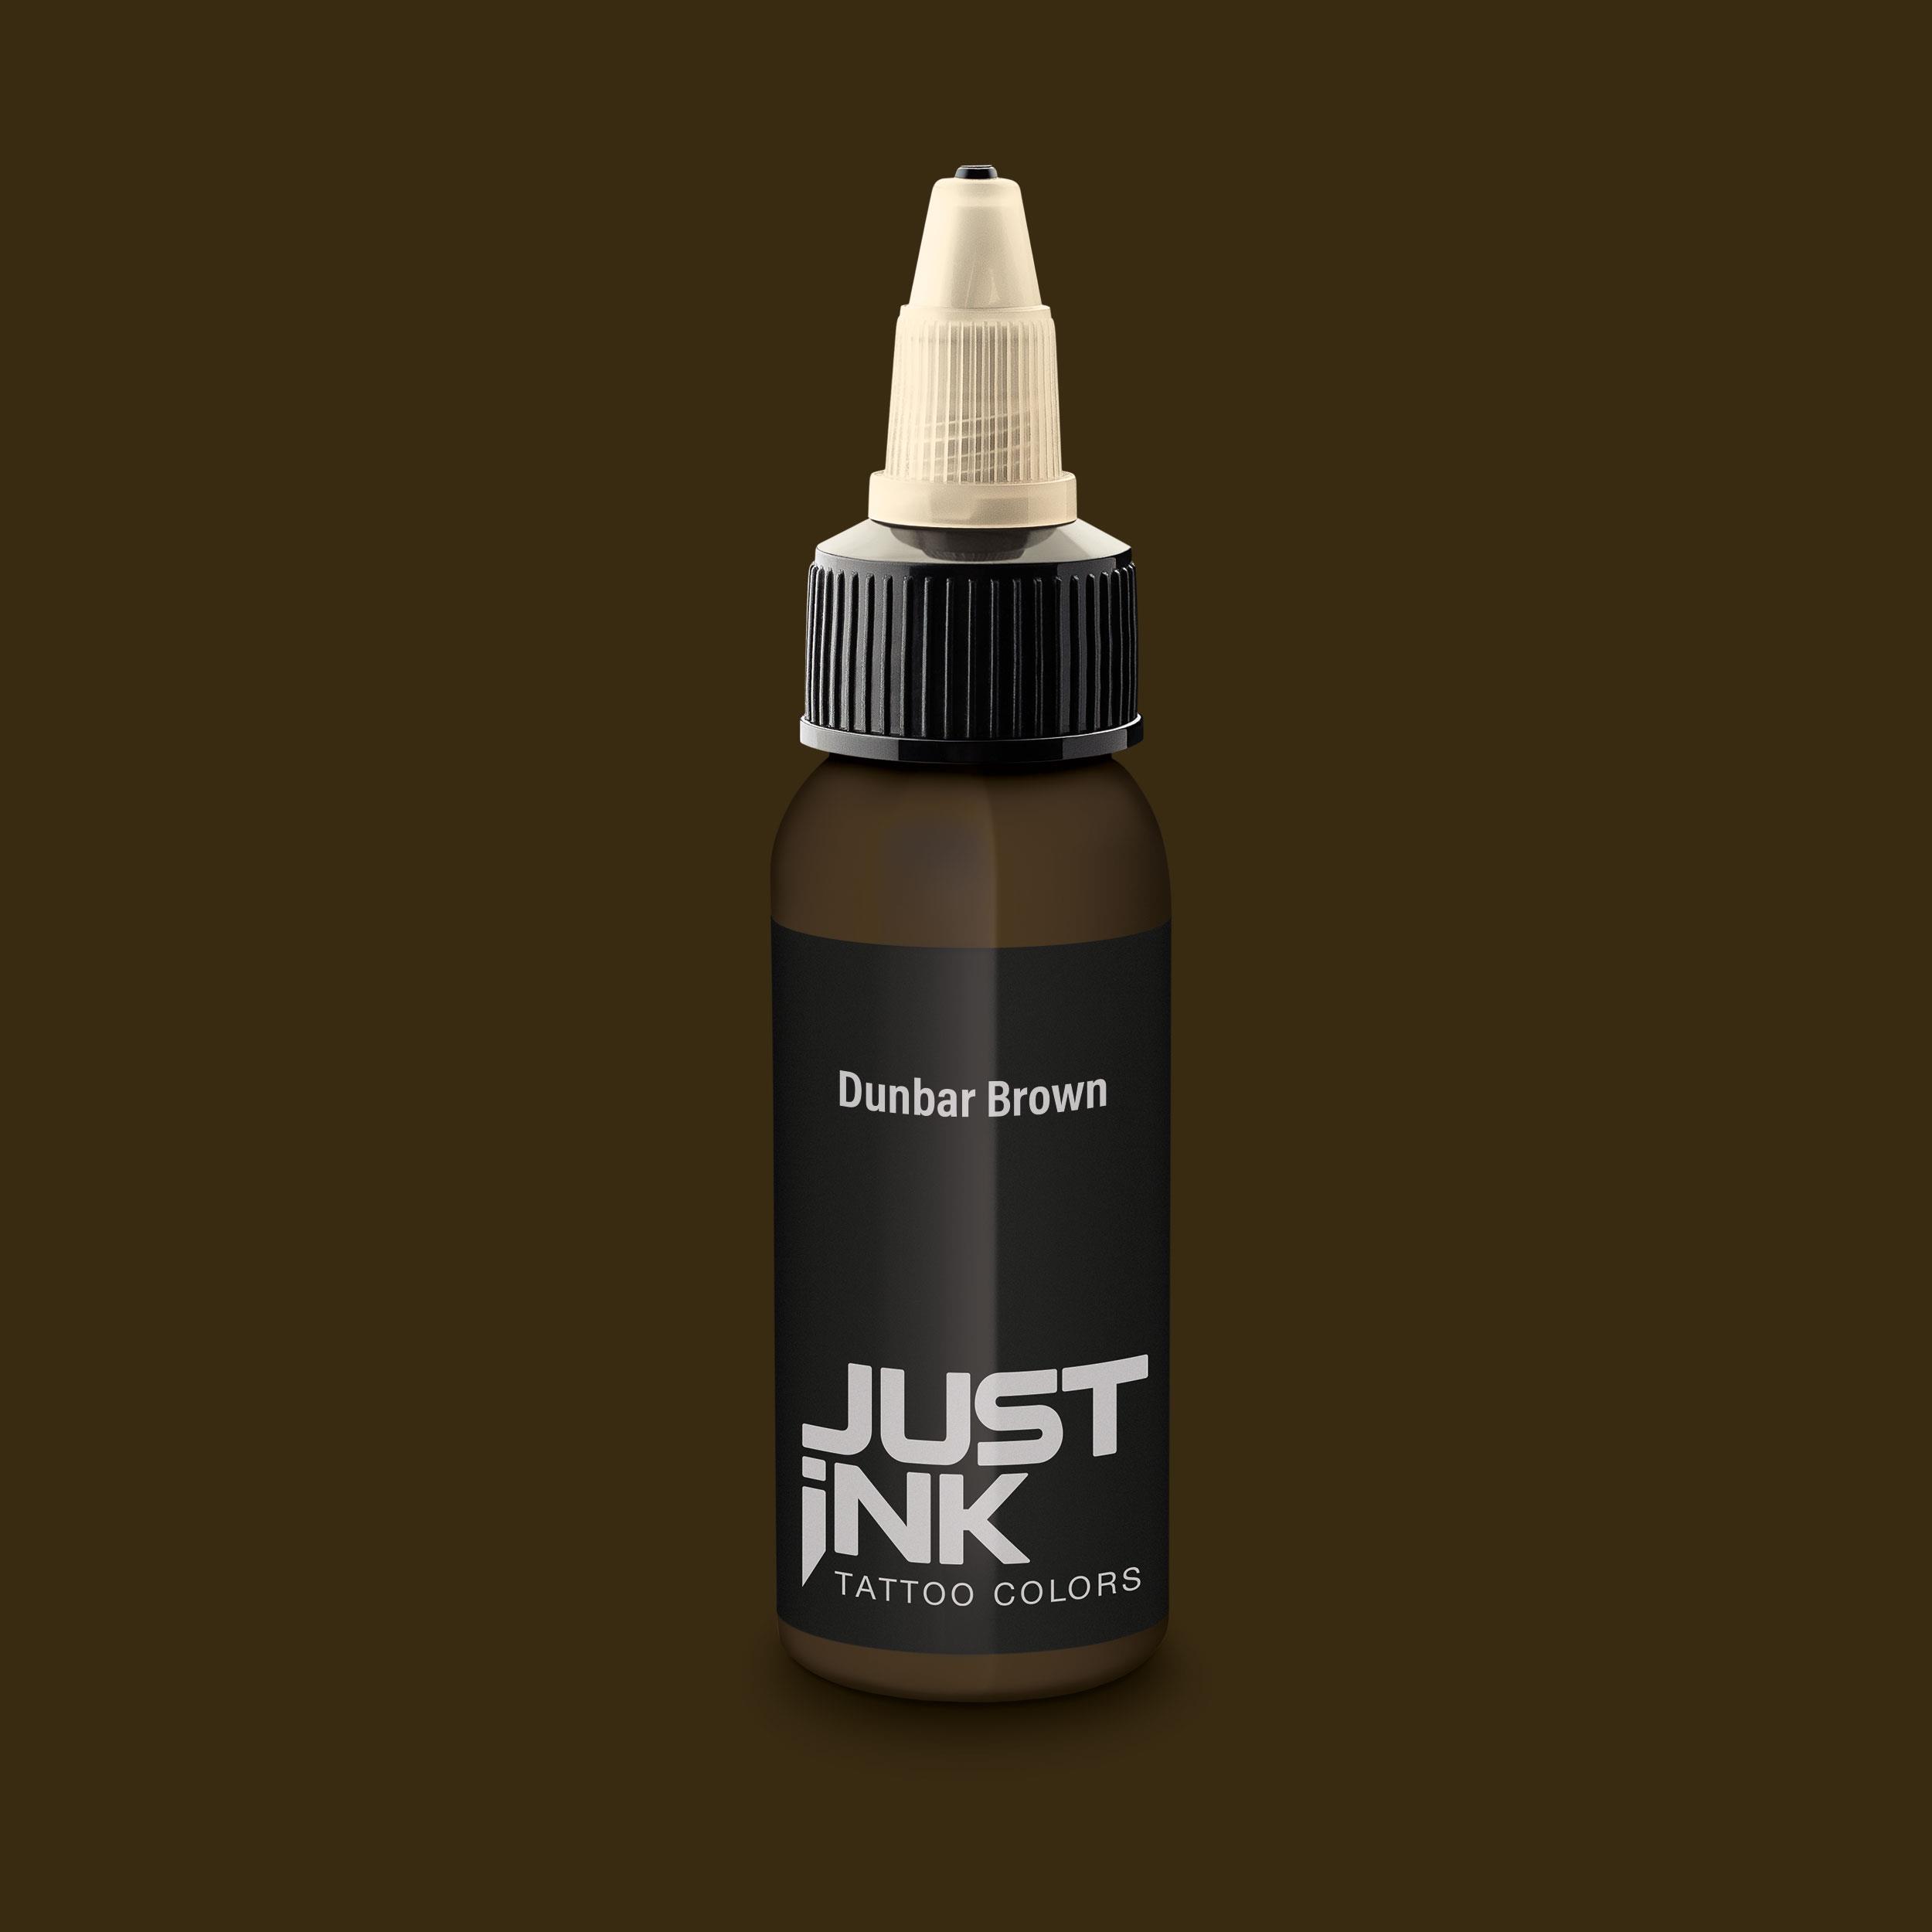 Just Ink - Tattoo Farbe - Dunbar Brown - 30 ml